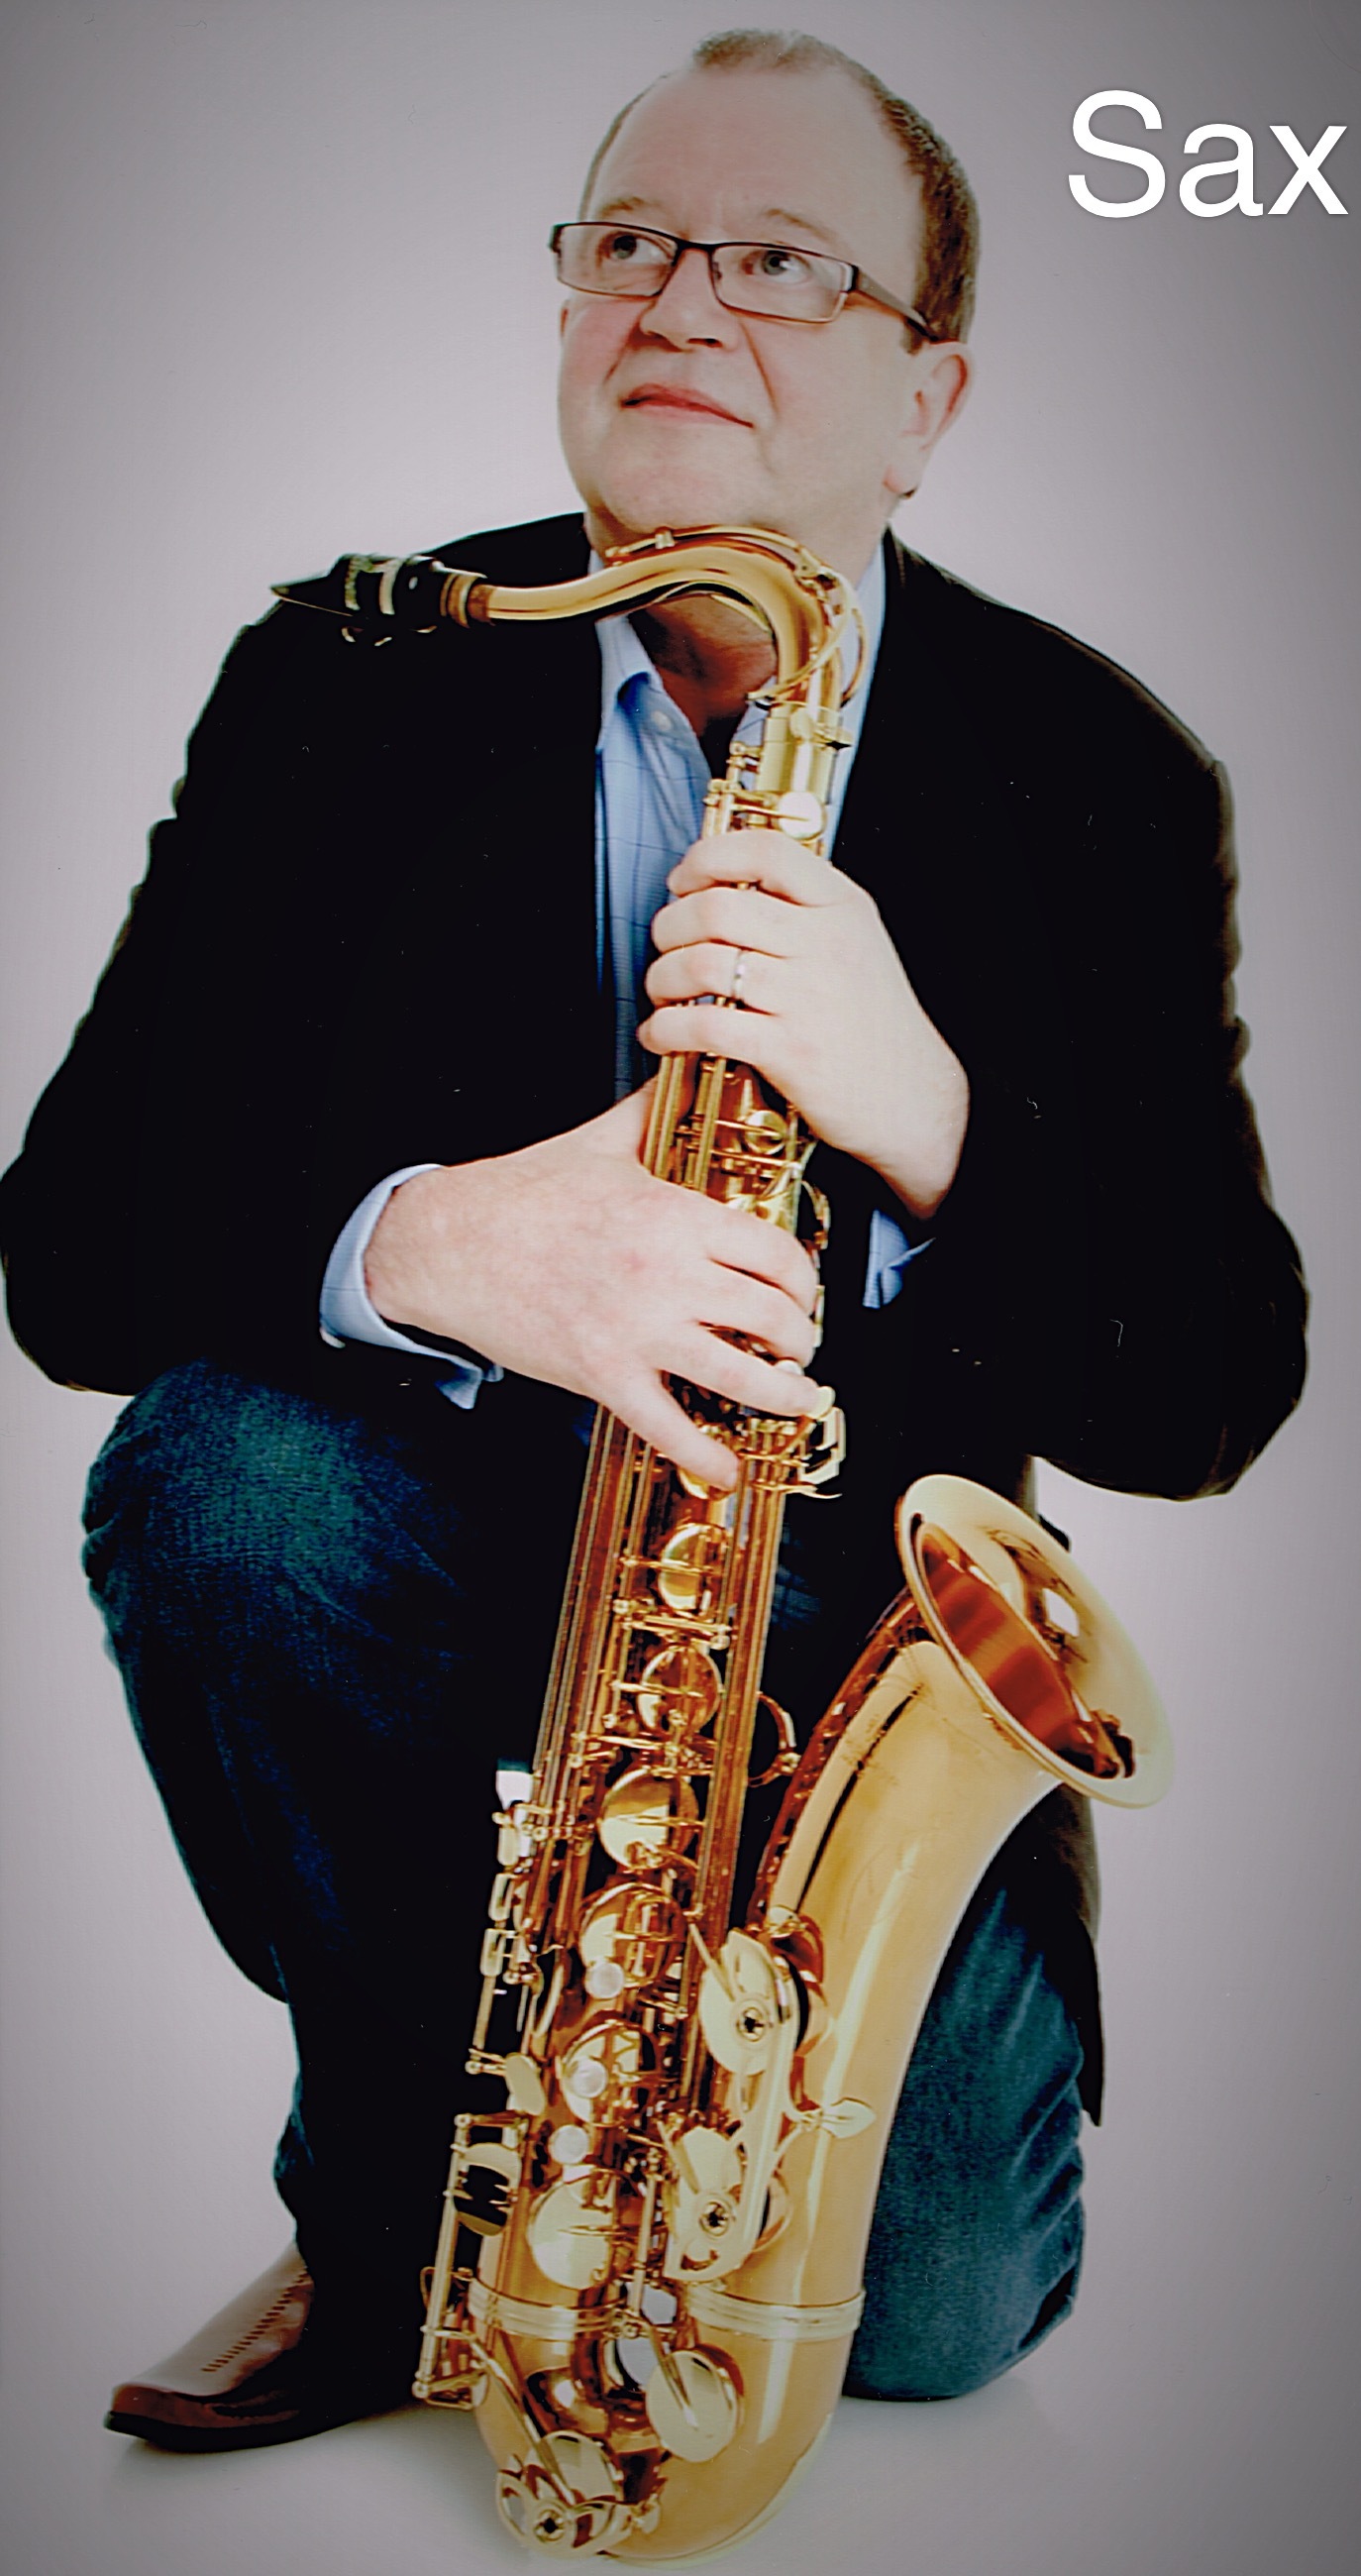 Saxophonist Ken in Edinburgh, Central Scotland